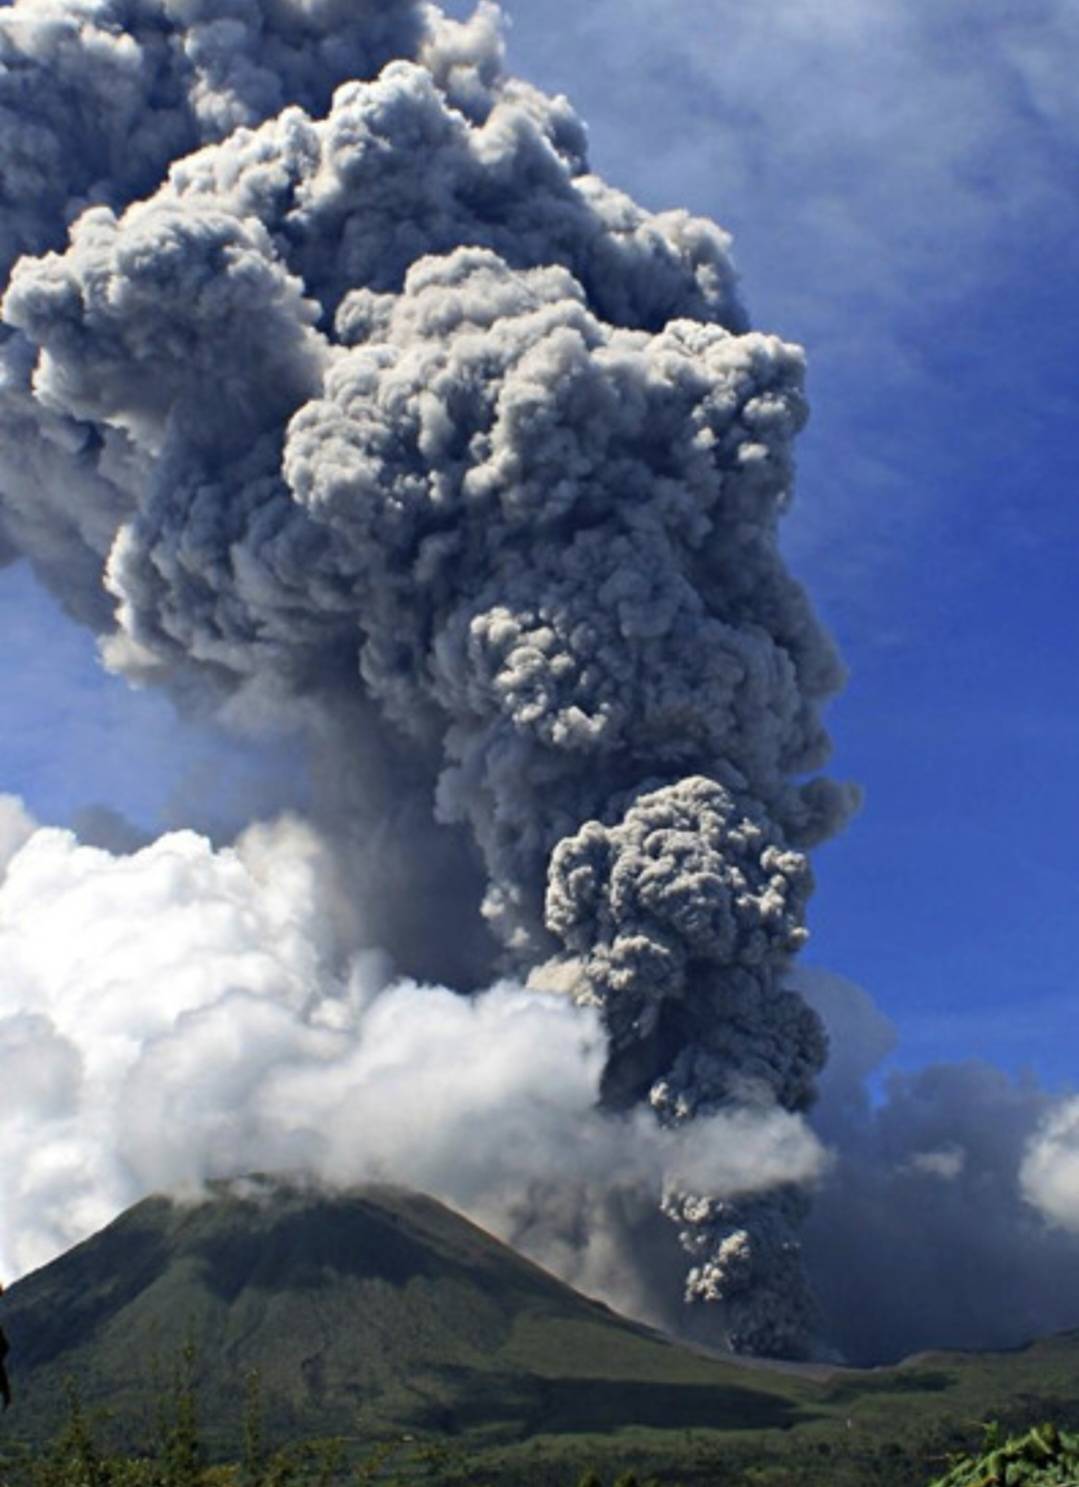 印尼马拉皮火山喷发,灰柱高达3000米